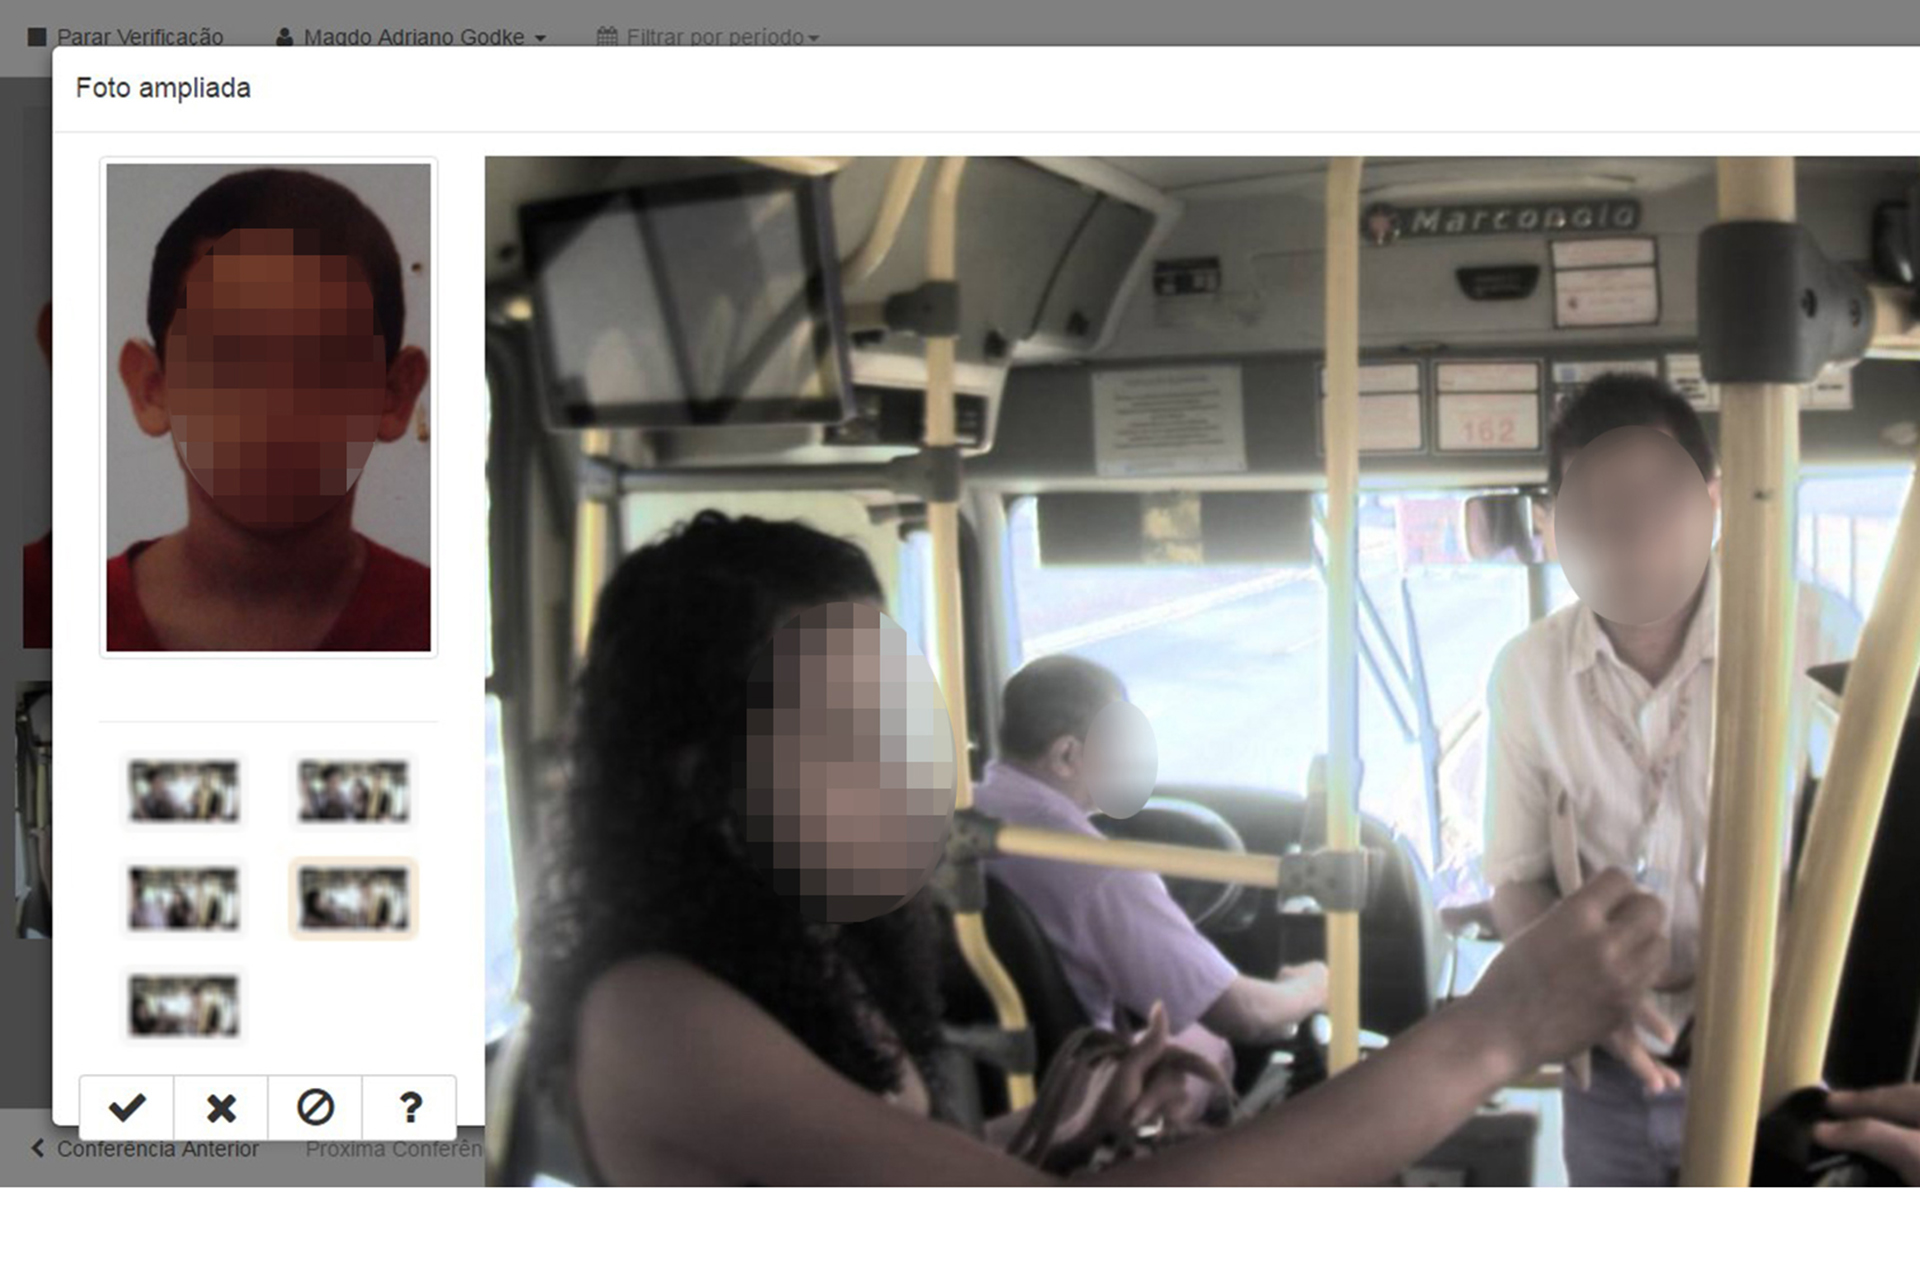 Imagens cedidas pela Secretaria de Mobilidade mostram reprodução das telas do sistema do controle das câmeras de identificação biométrica facial, com exemplos de uso irregular dos cartões do Passe Livre.